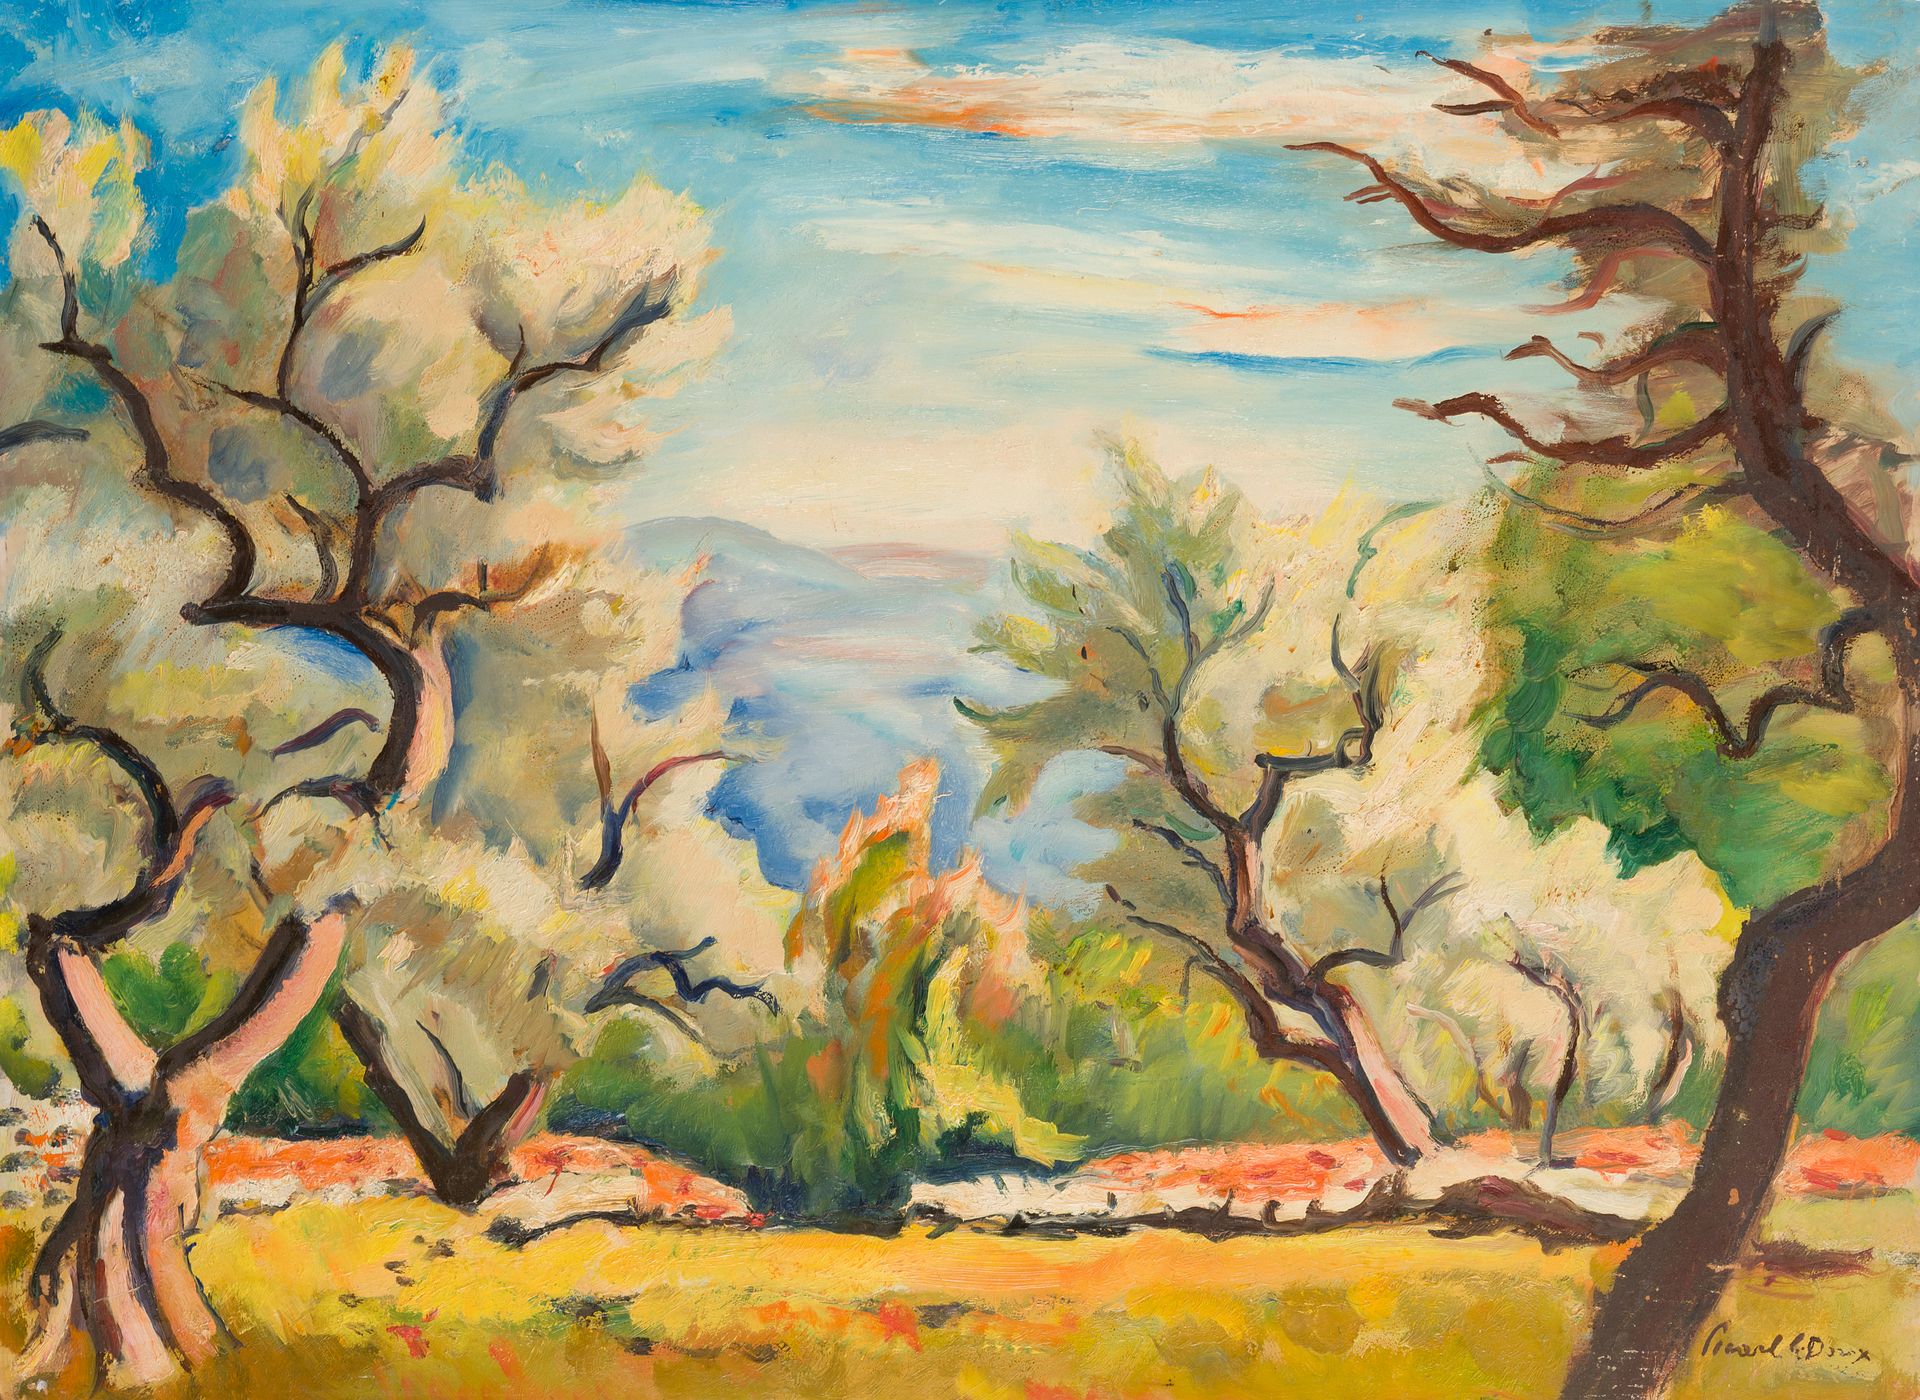 Null 查尔斯-皮卡特-勒杜(1881-1959)
橄榄树
右下角有签名的伊索莱尔上的油画
60 x 80厘米